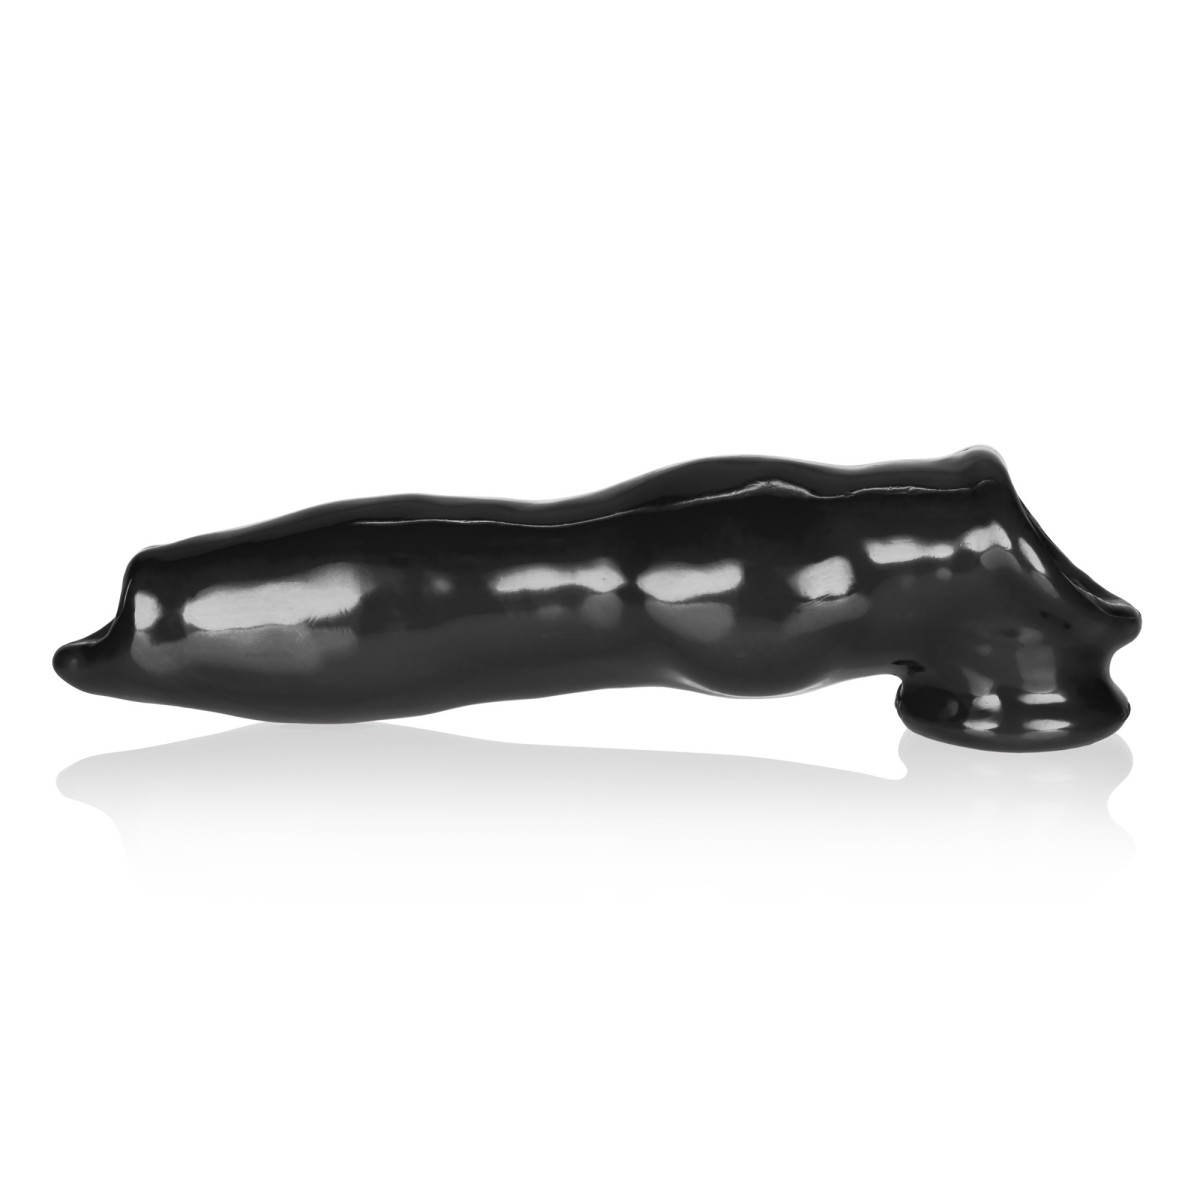 Psí návlek na penis Oxballs Fido černý, návlek na penis ve tvaru psího penisu 22 x 3,5–6,5 cm